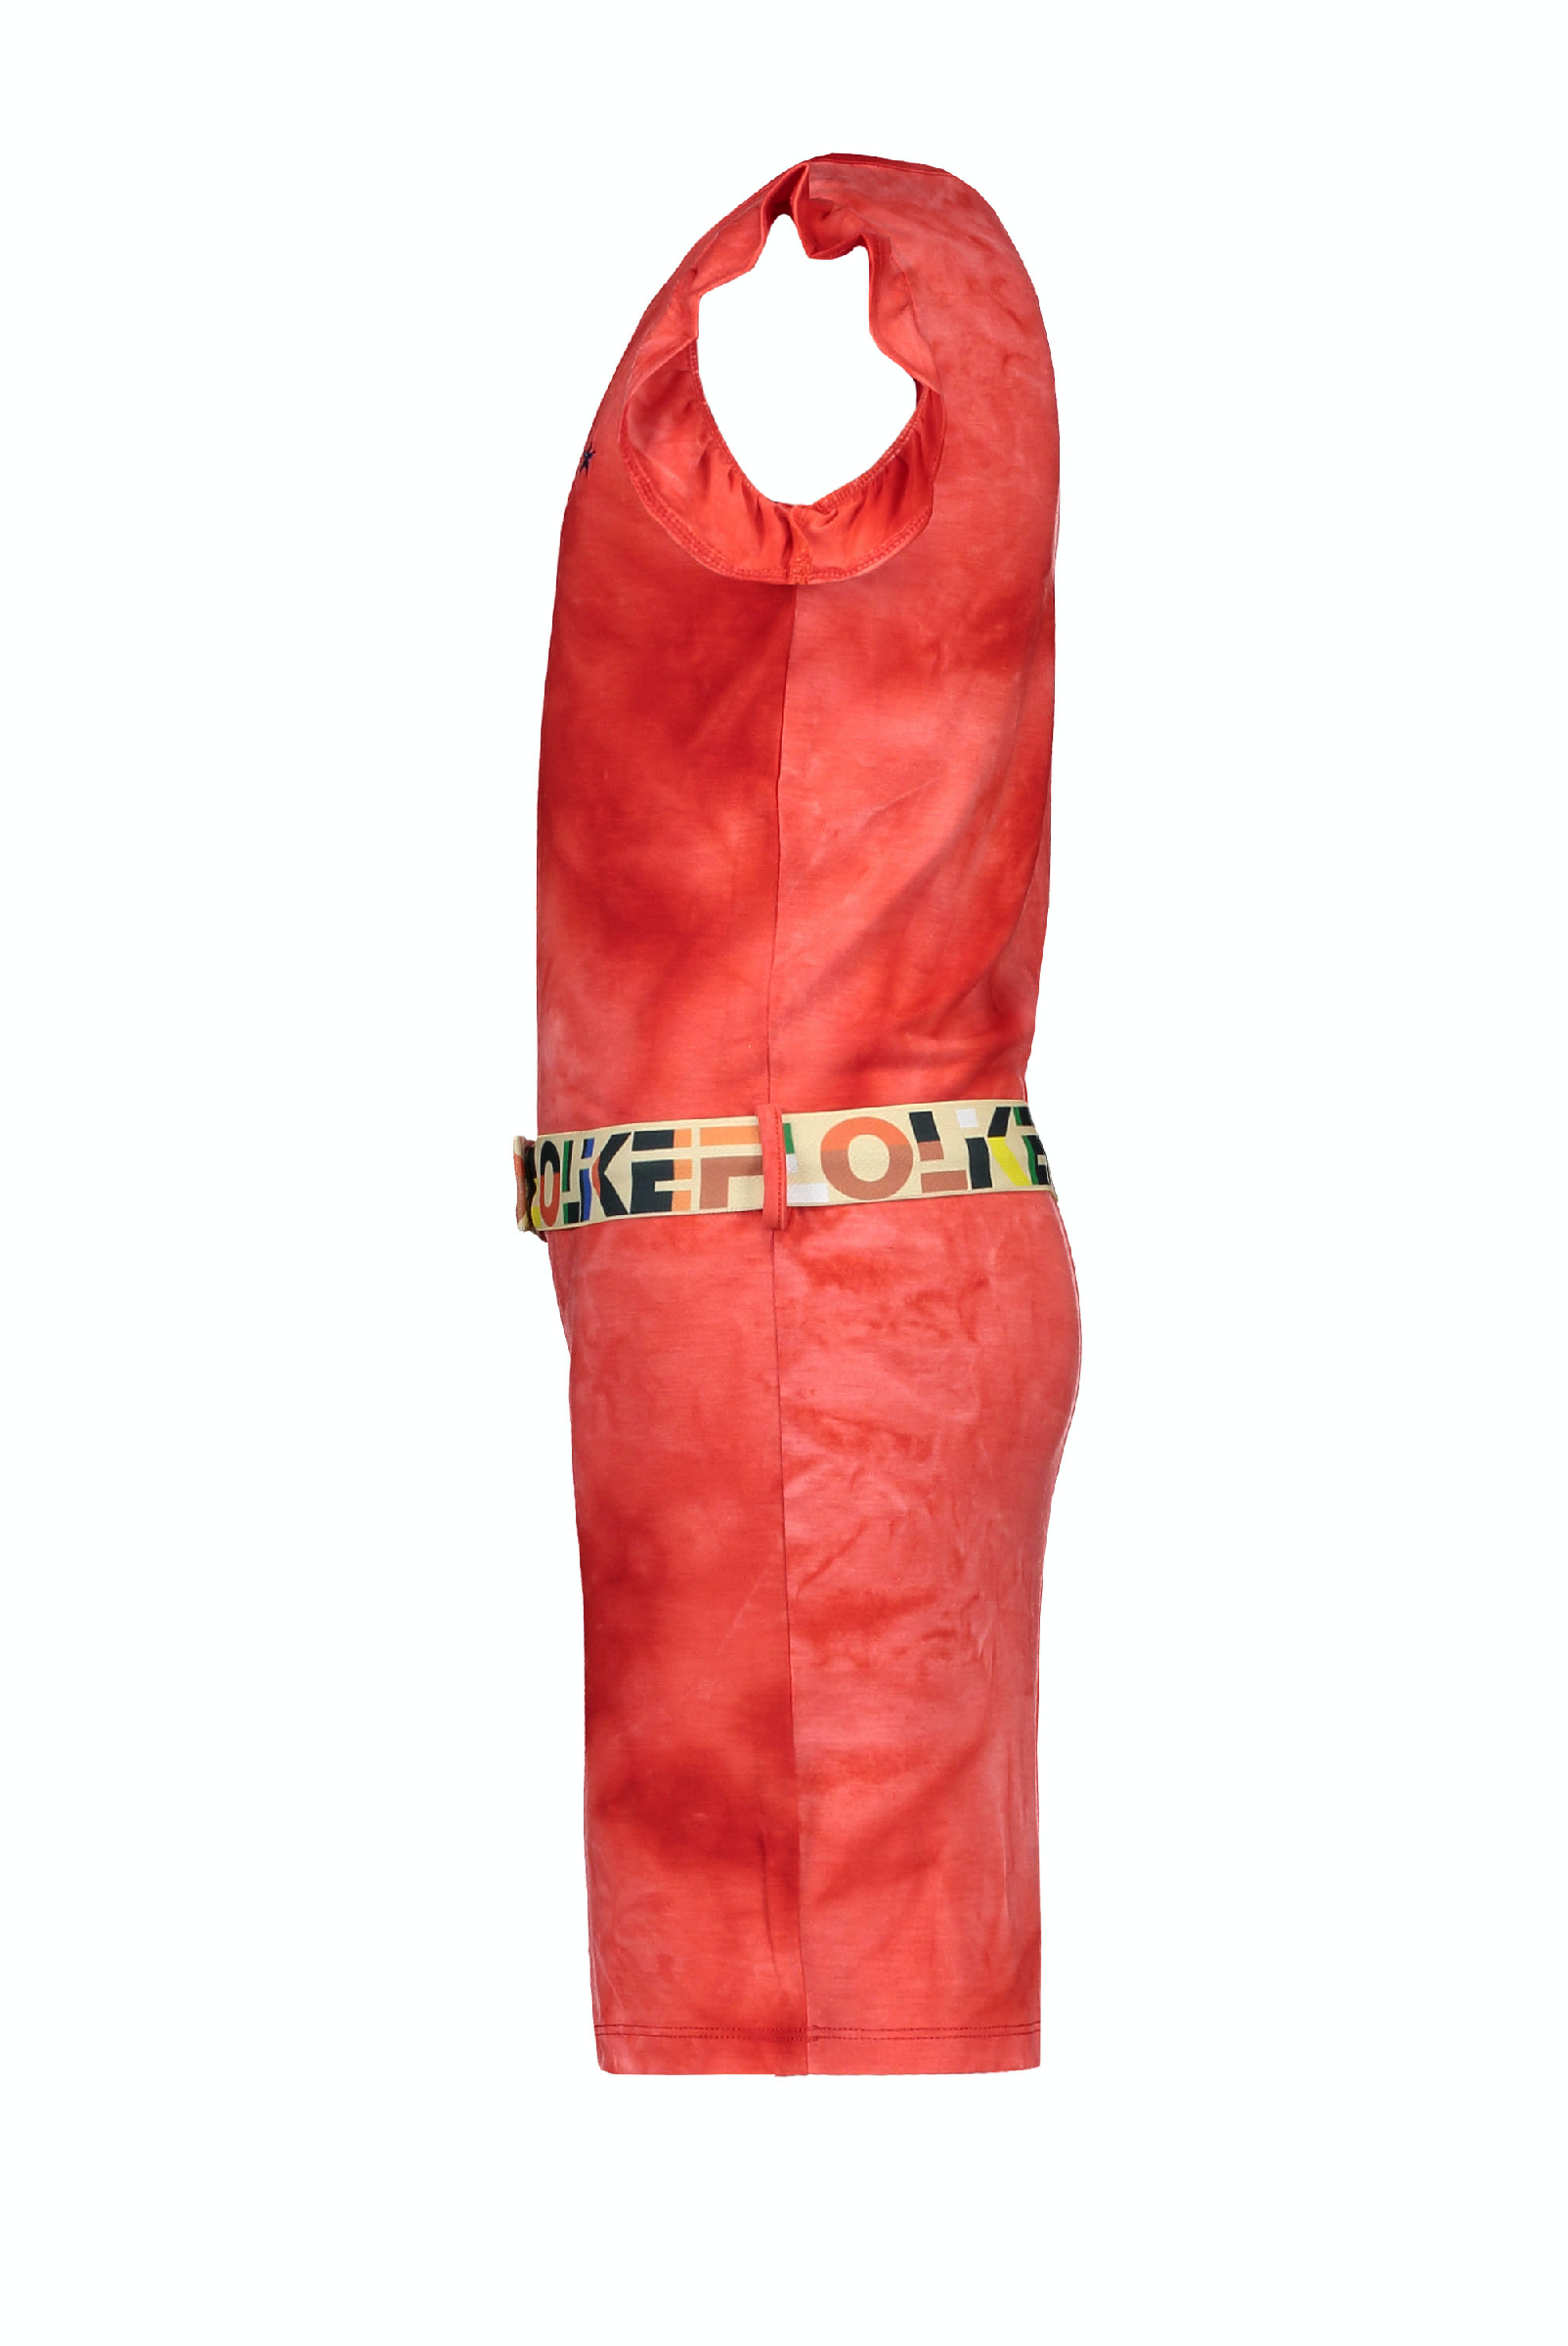 Meisjes Flo girls tie-dye jersey singlet dress van Flo in de kleur Papaya in maat 152.